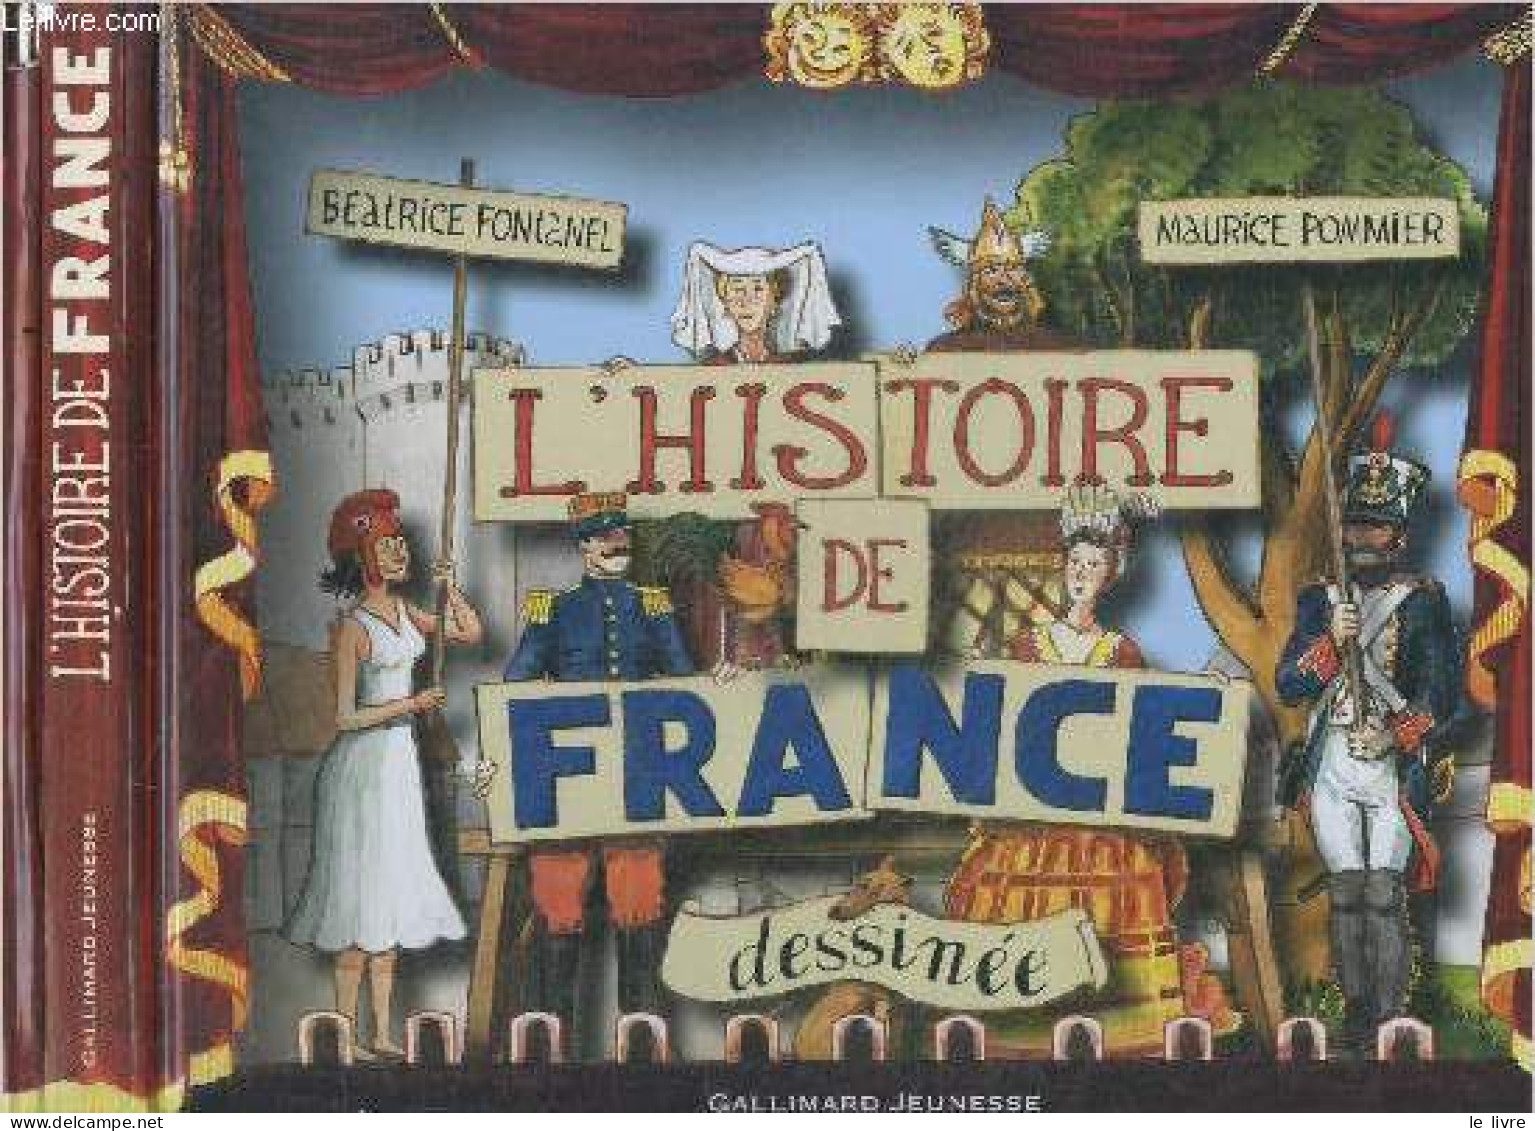 L'histoire De France Dessinée - Beatrice Fontanel, Maurice Pommier (Illustrations) - 0 - History